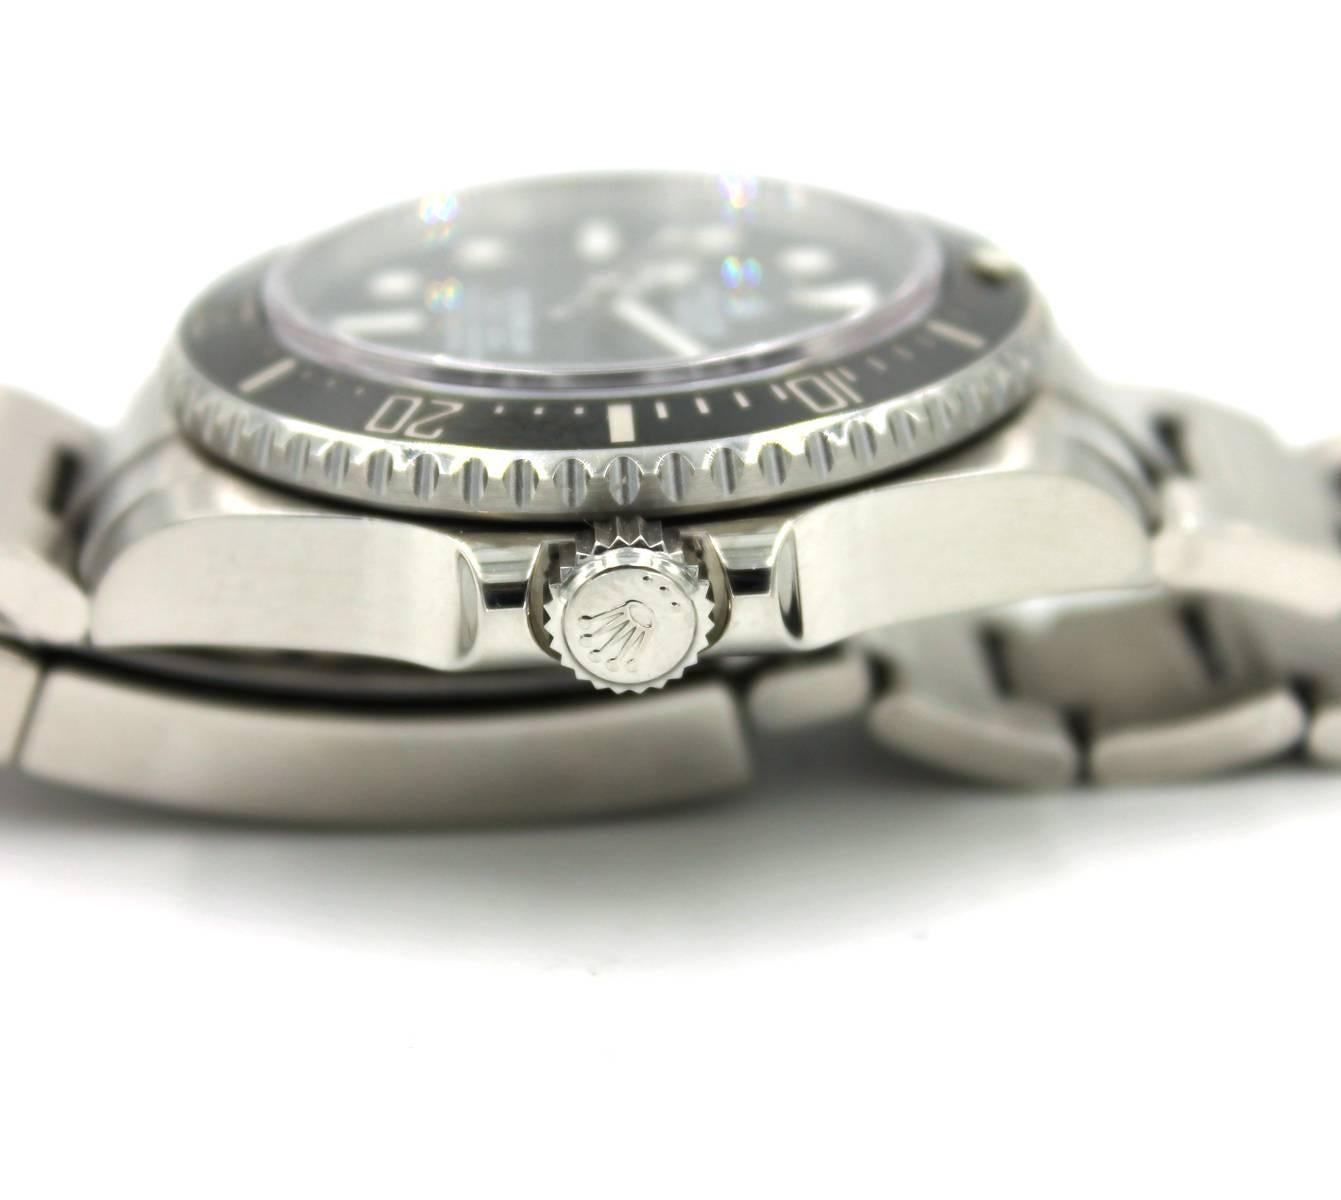 Rolex Stainless Steel Sea Dweller Wristwatch Ref 11660 1